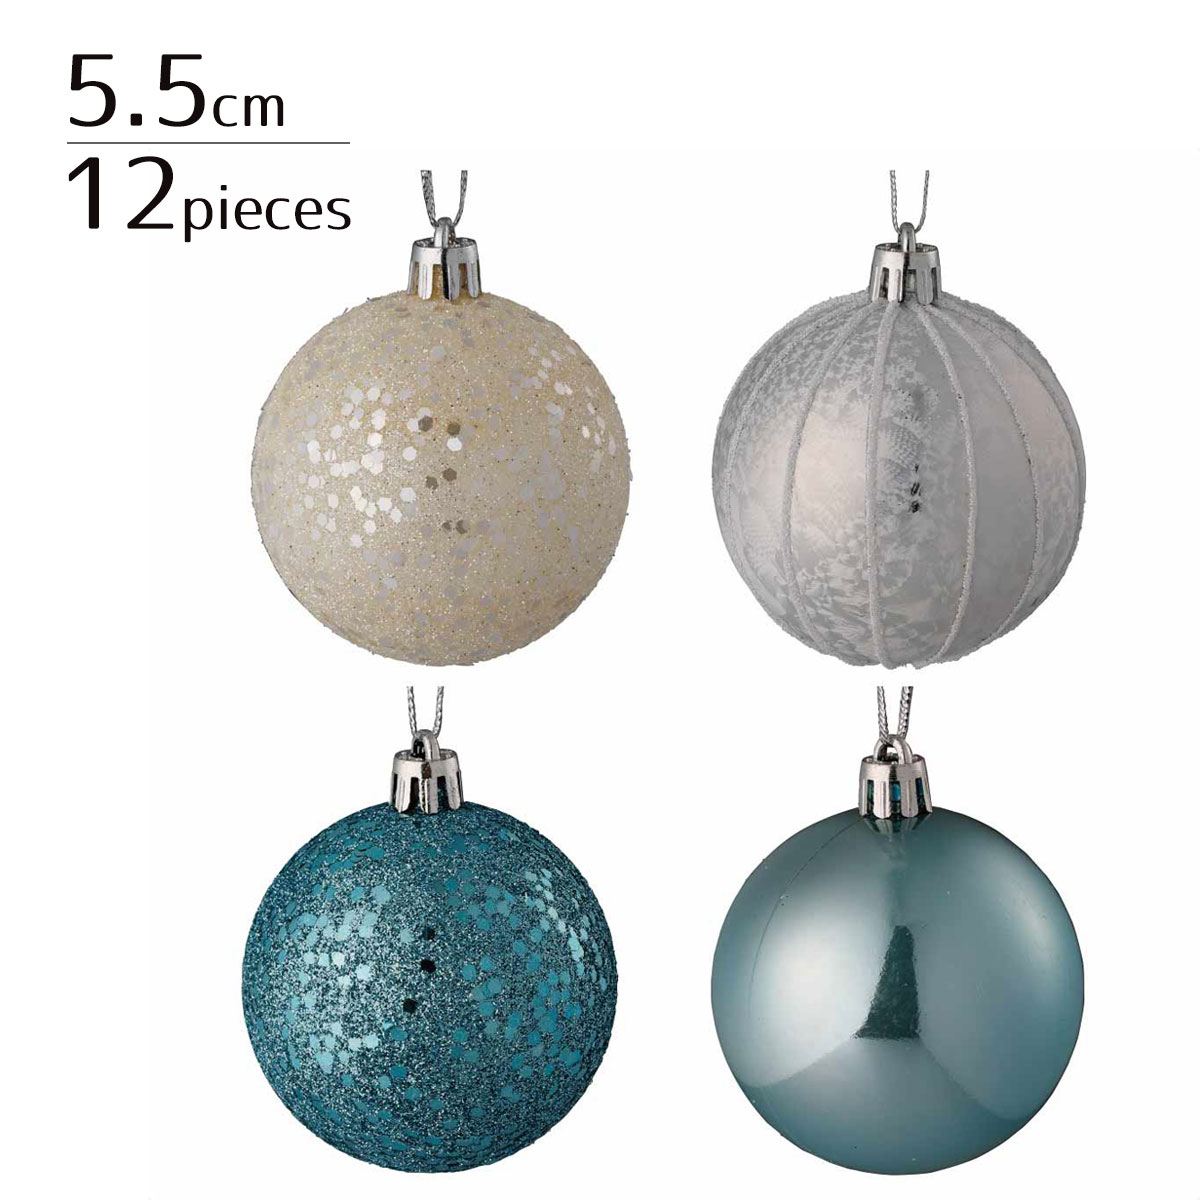 プラスチックオーナメントボール ブルーライン華やかでメタリックな質感のオーナメントボールで、ワンランク上のツリー装飾を！ボールの模様は4種類で各3個ずつ計12個がセットに。クリスマス 飾り 装飾 オーナメント ボール